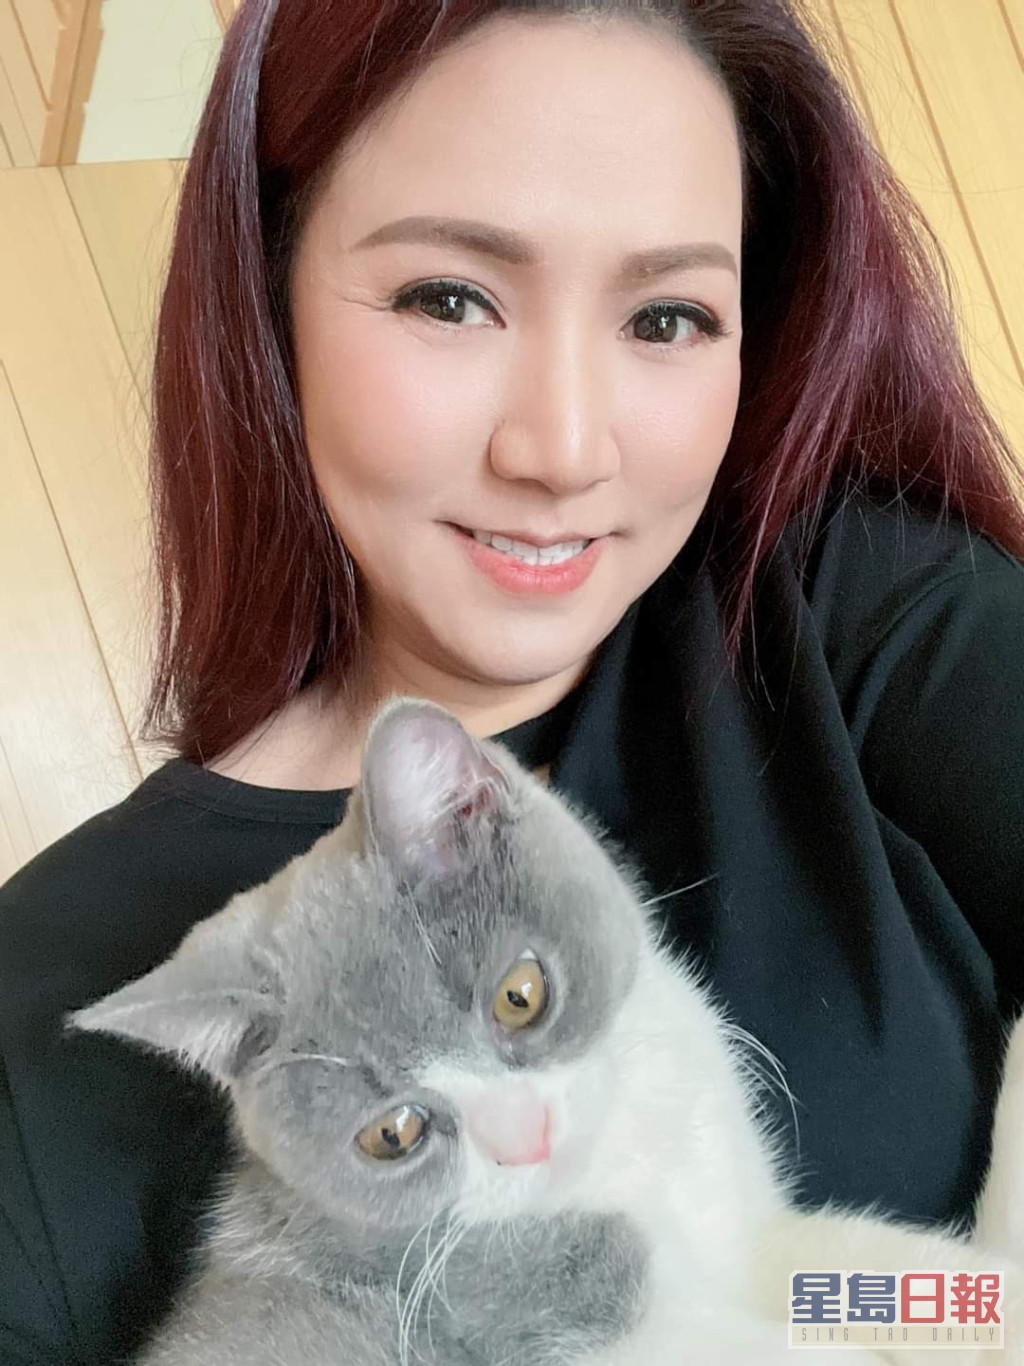 小恩子近年更開心養貓。